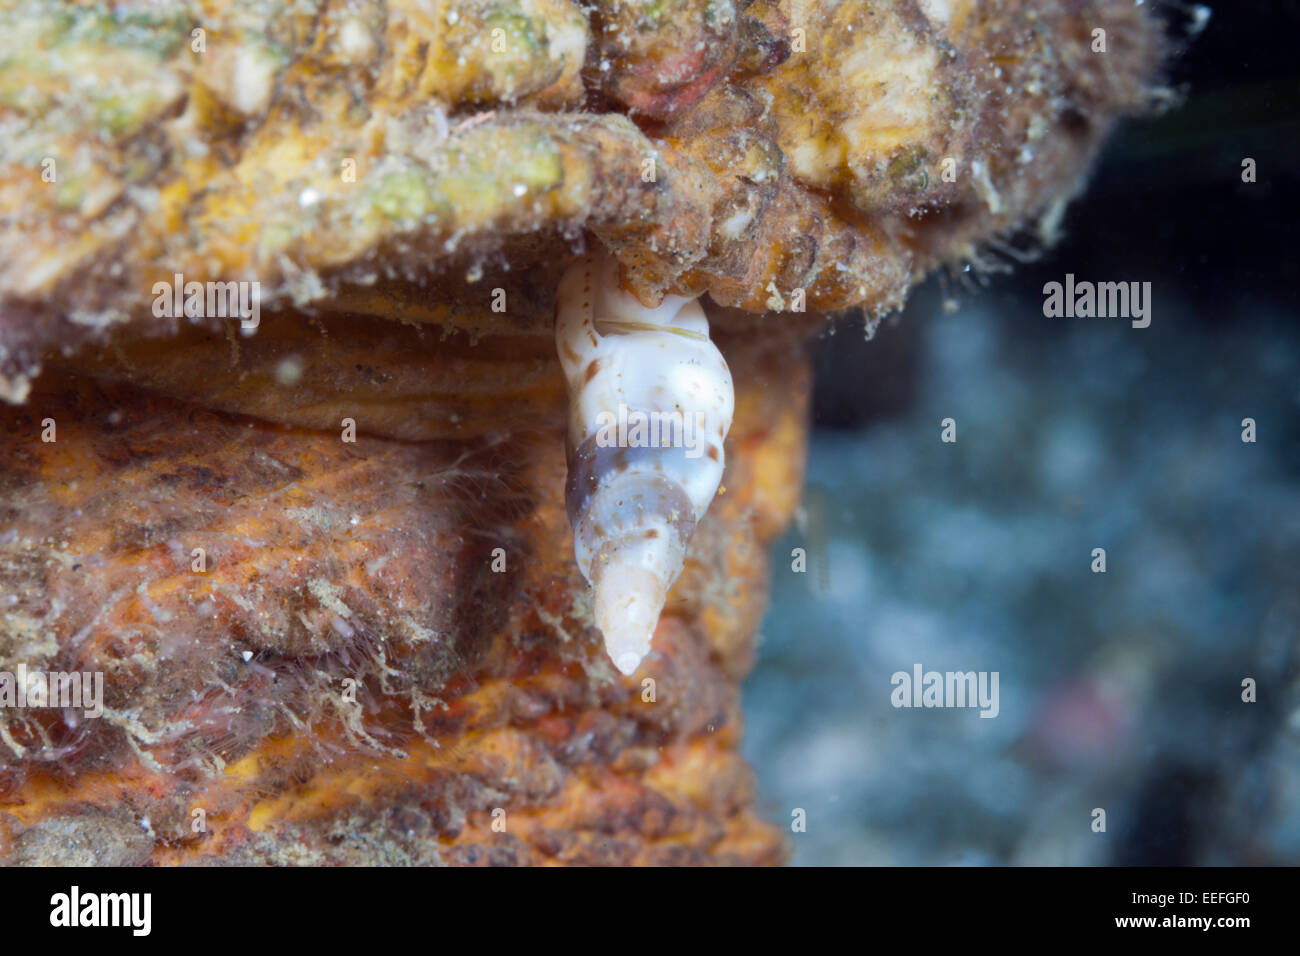 Parasitic Snail, Luetzenia asthenosomae, Ambon, Moluccas, Indonesia Stock Photo